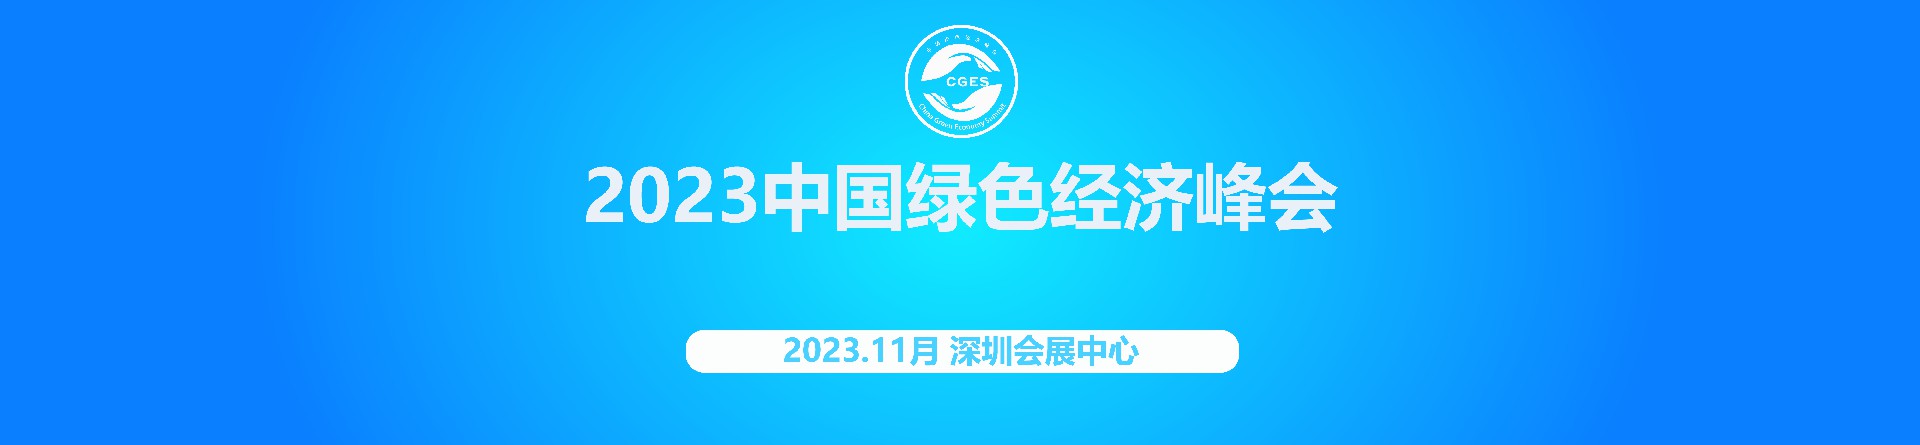 2023中国绿色经济峰会